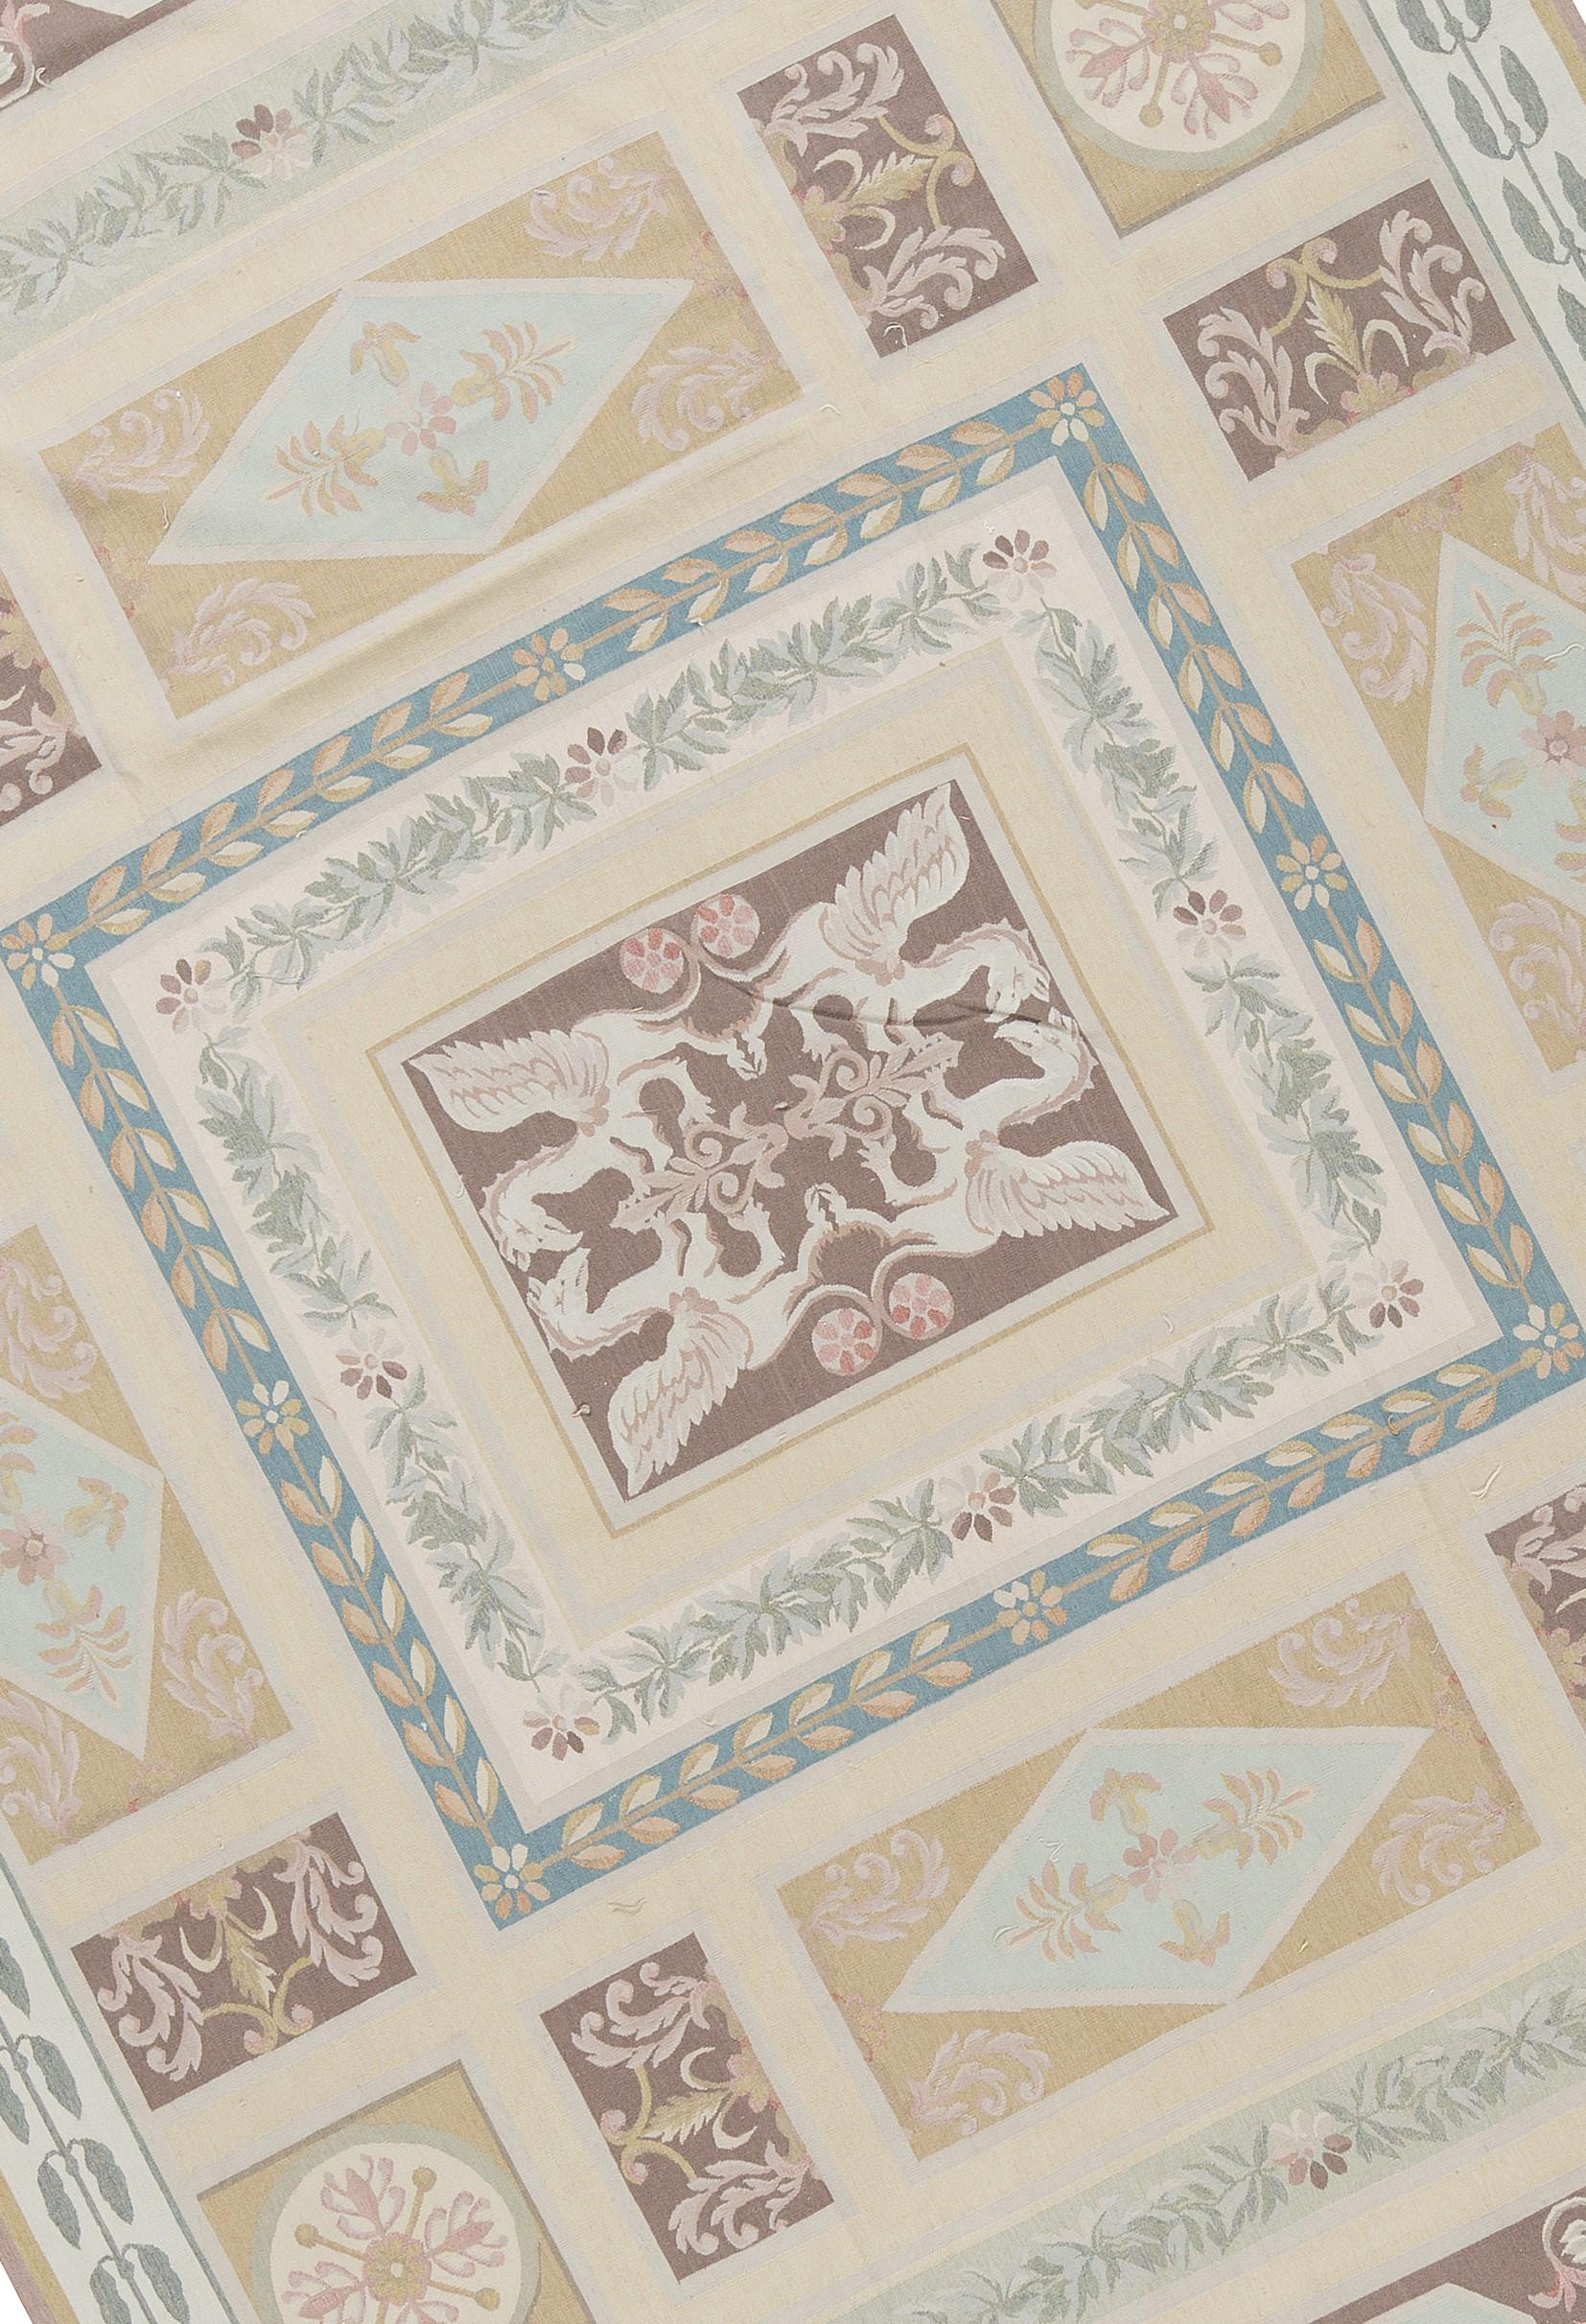 Récréation tissée à la main des tapis d'Aubusson classiques français à tissage plat que l'on trouve dans les maisons et les palais les plus raffinés depuis la fin du XVIIe siècle. Taille 10' x 14' 7''.